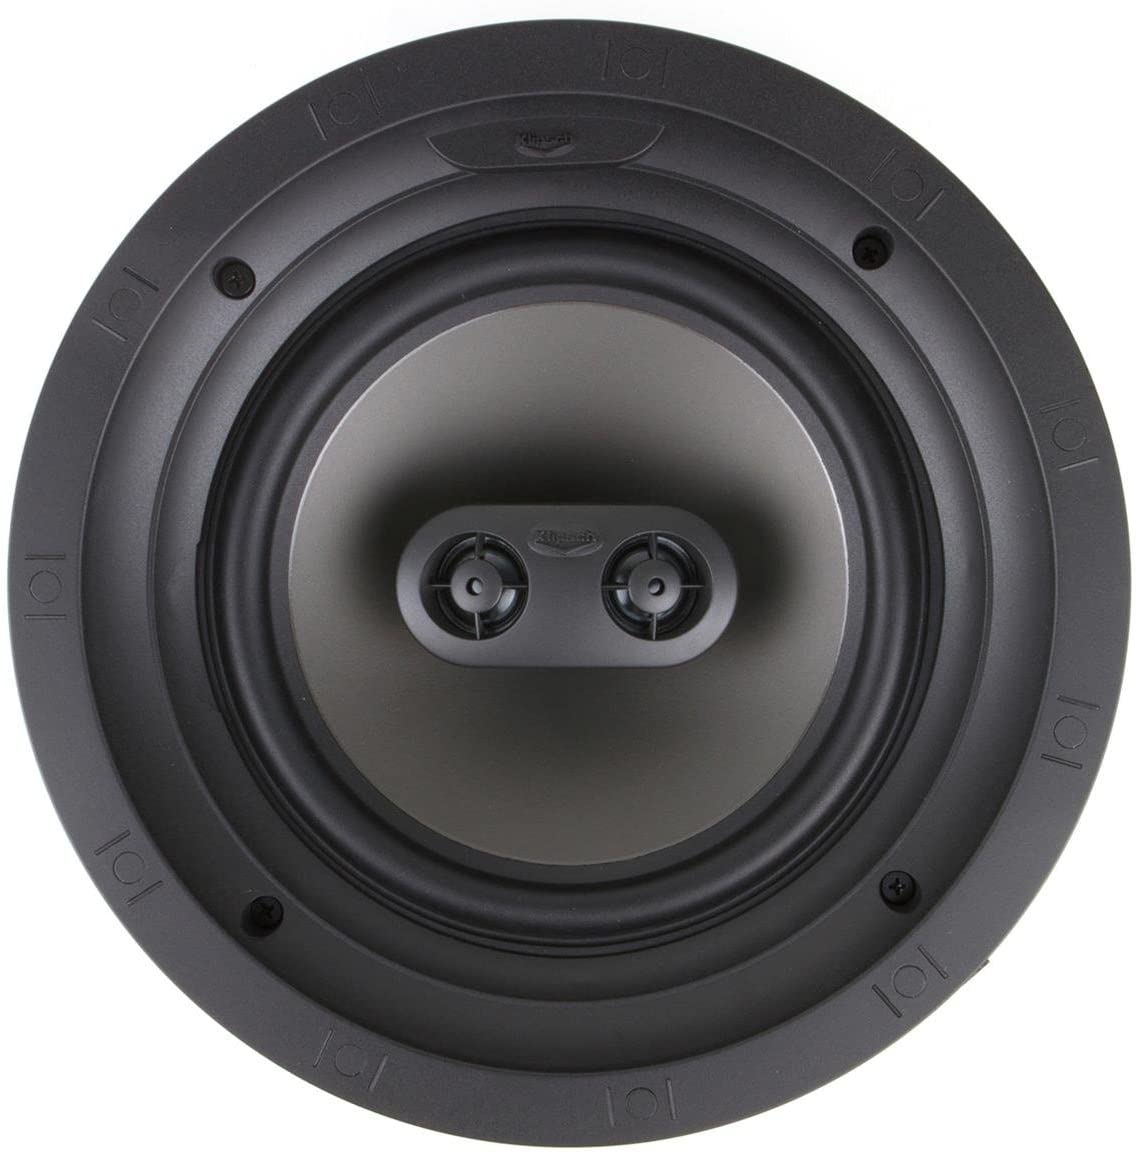 Klipsch K1014137 R-2650-CSM II In-Ceiling Speaker White